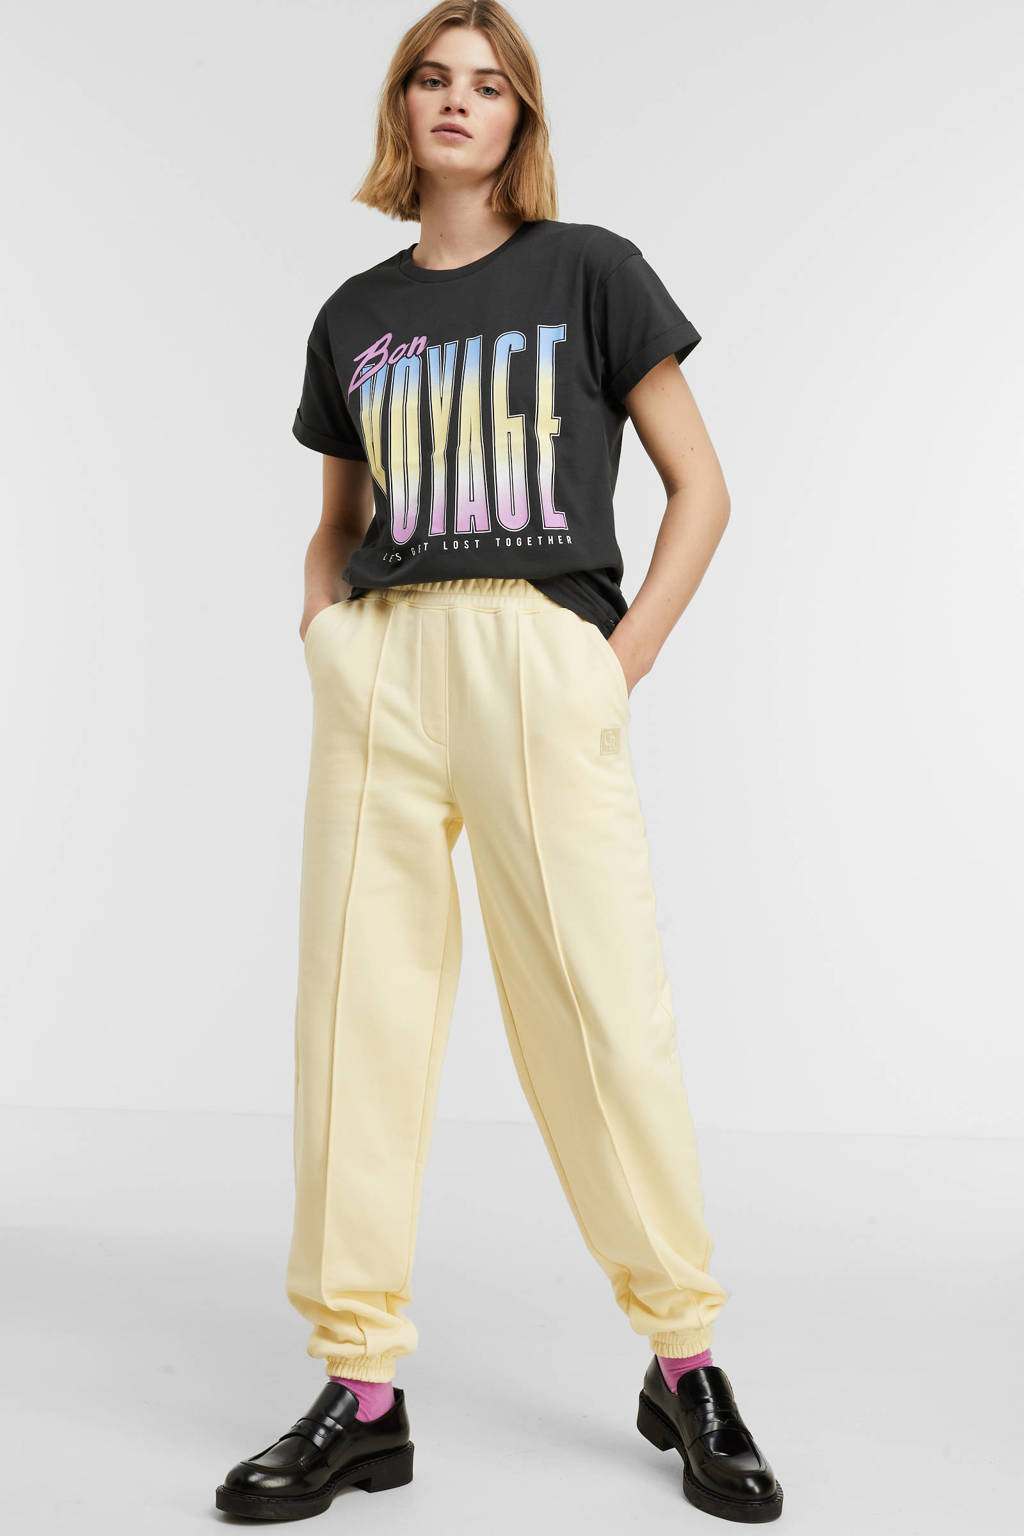 Antraciete dames Colourful Rebel T-shirt van duurzaam katoen met printopdruk, korte mouwen en ronde hals